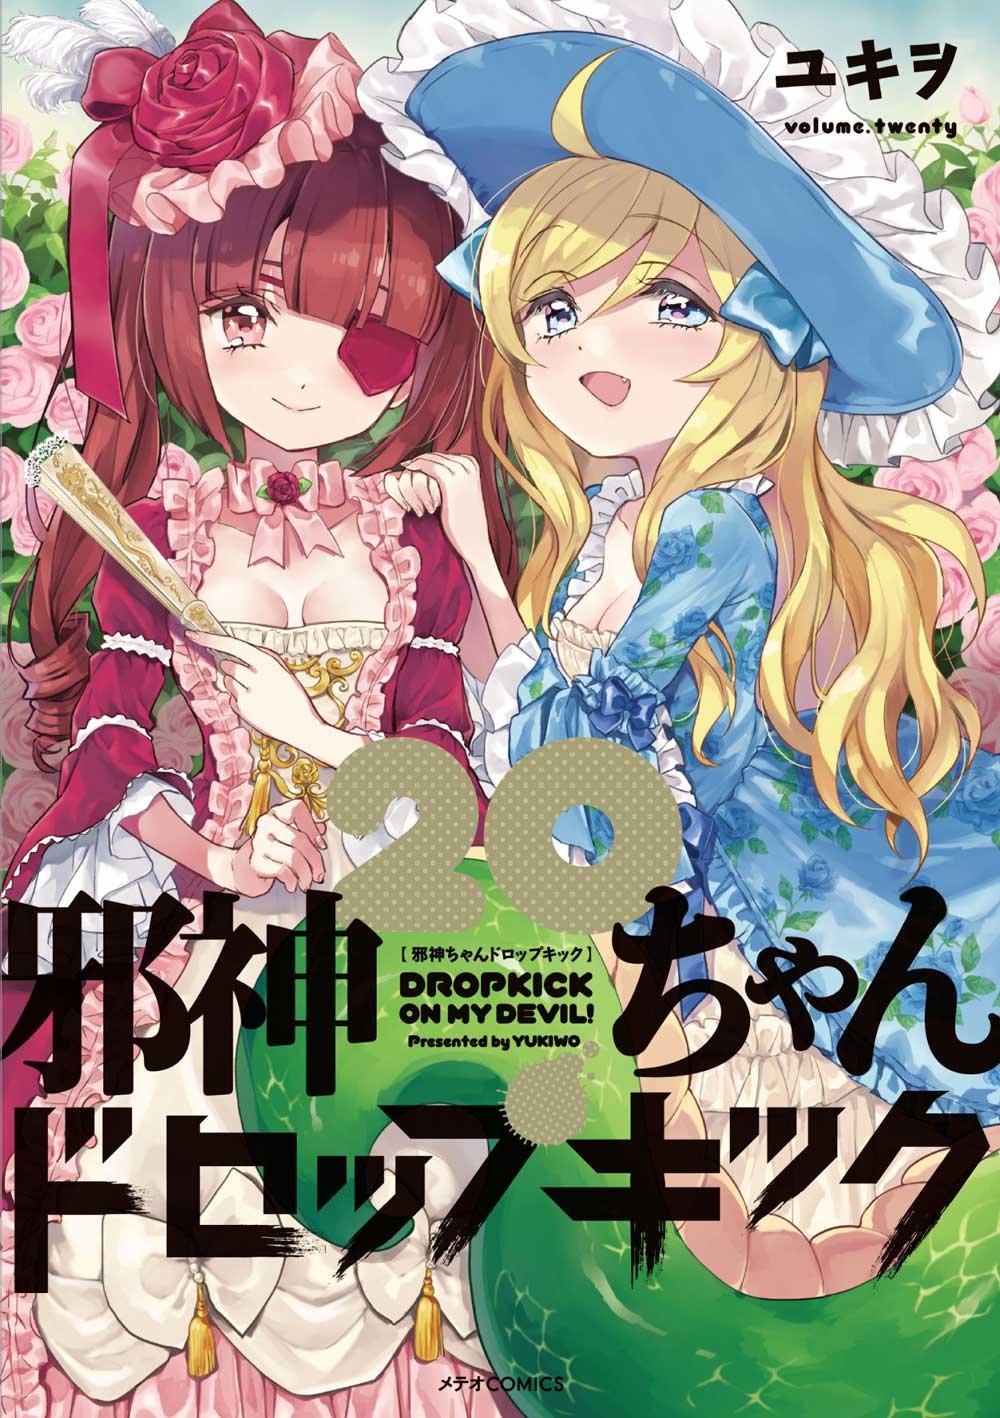 El manga Jashin-chan Dropkick revelo la portada para su volumen #20